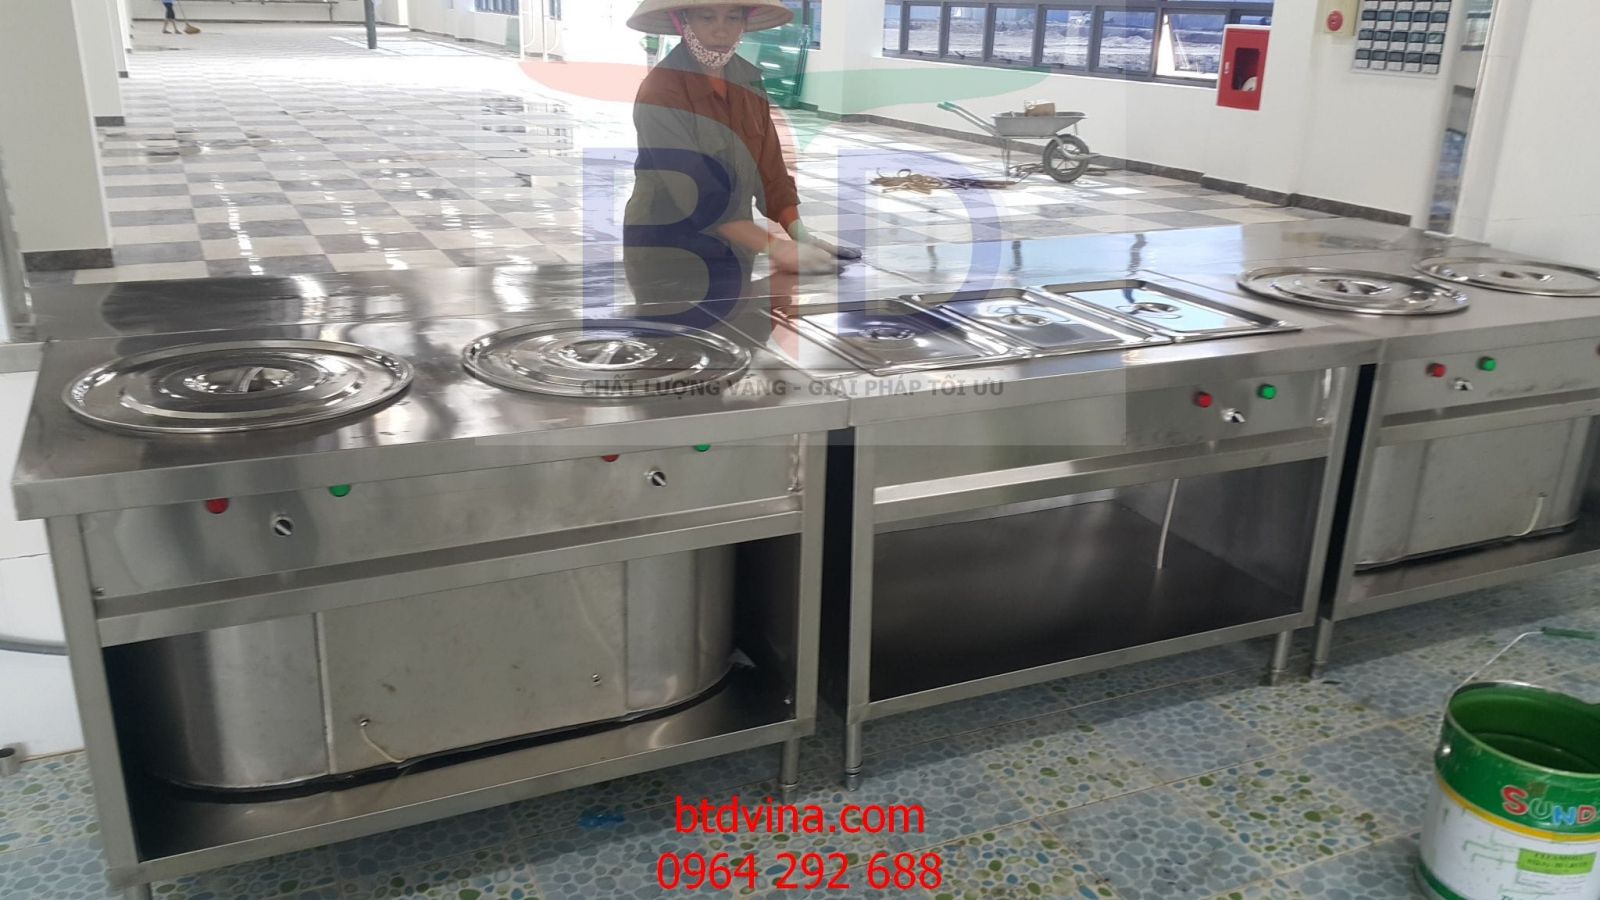 Nồi giữ nóng cơm canh inox tại khu bếp nhà máy Hanyang Digitech Vina- Phú Hà- Phú Thọ